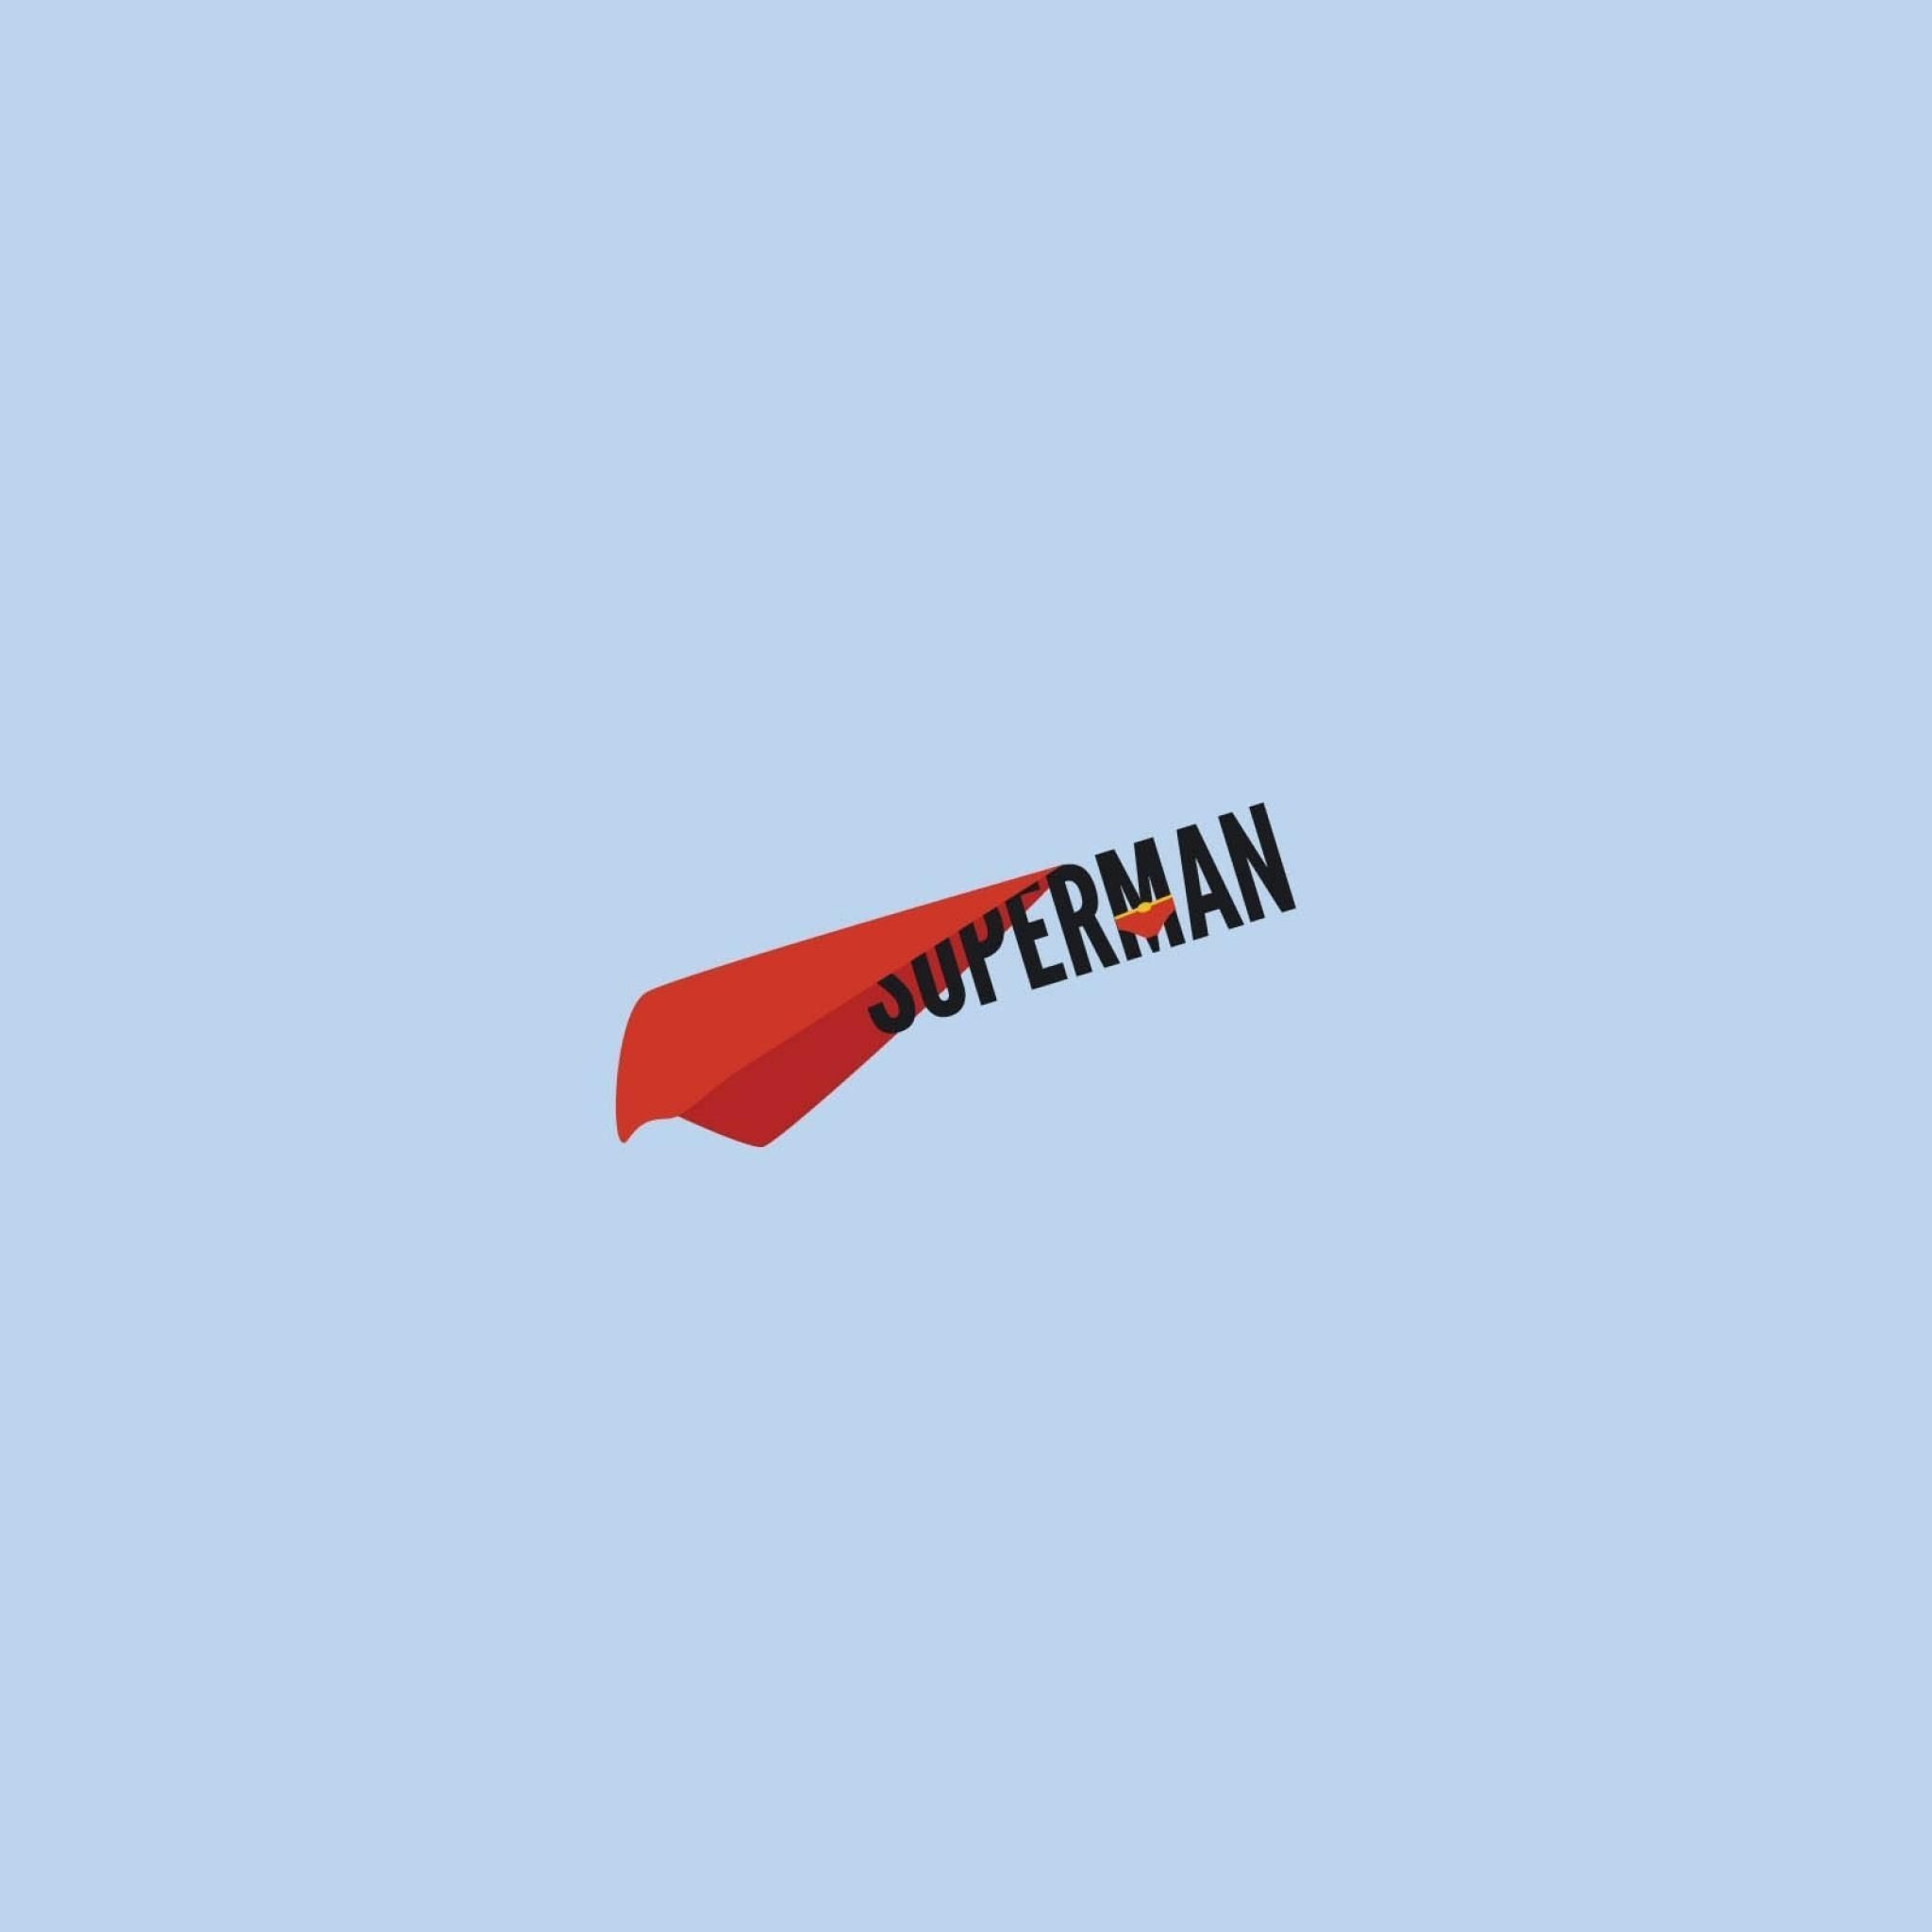 Superman Minimal iPad Wallpaper HD. iPad, iPhone